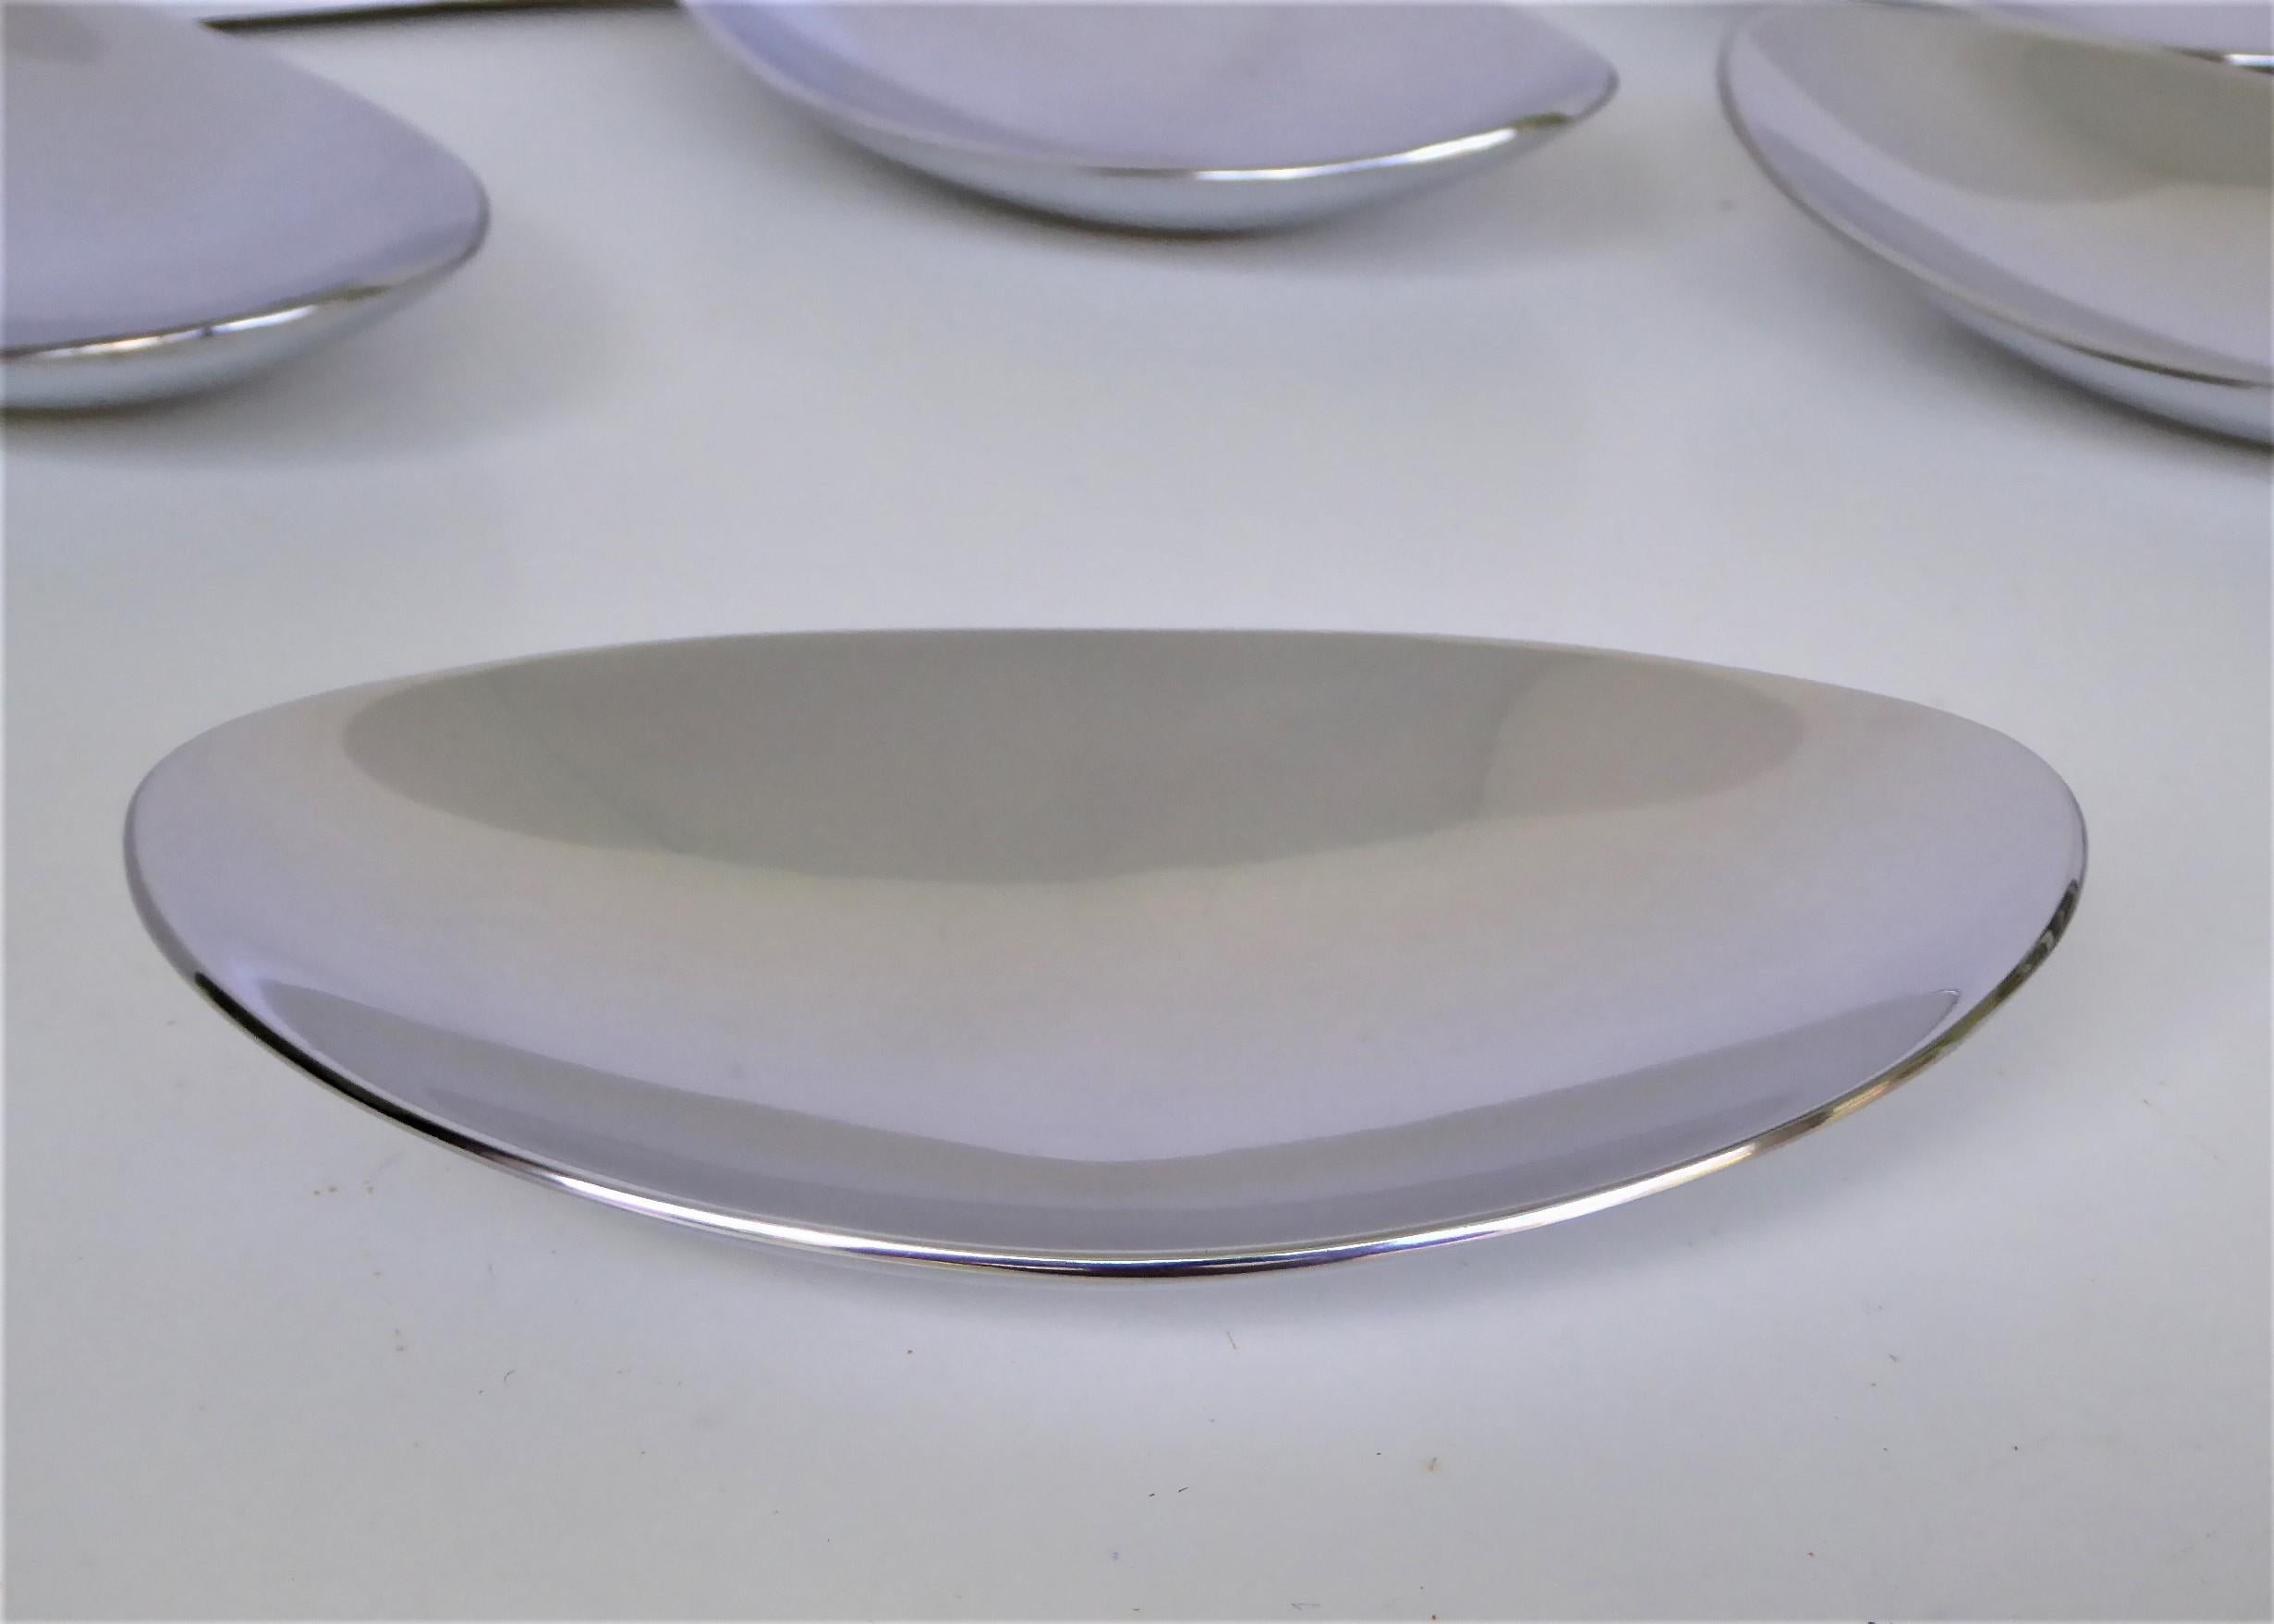 calvin klein plates